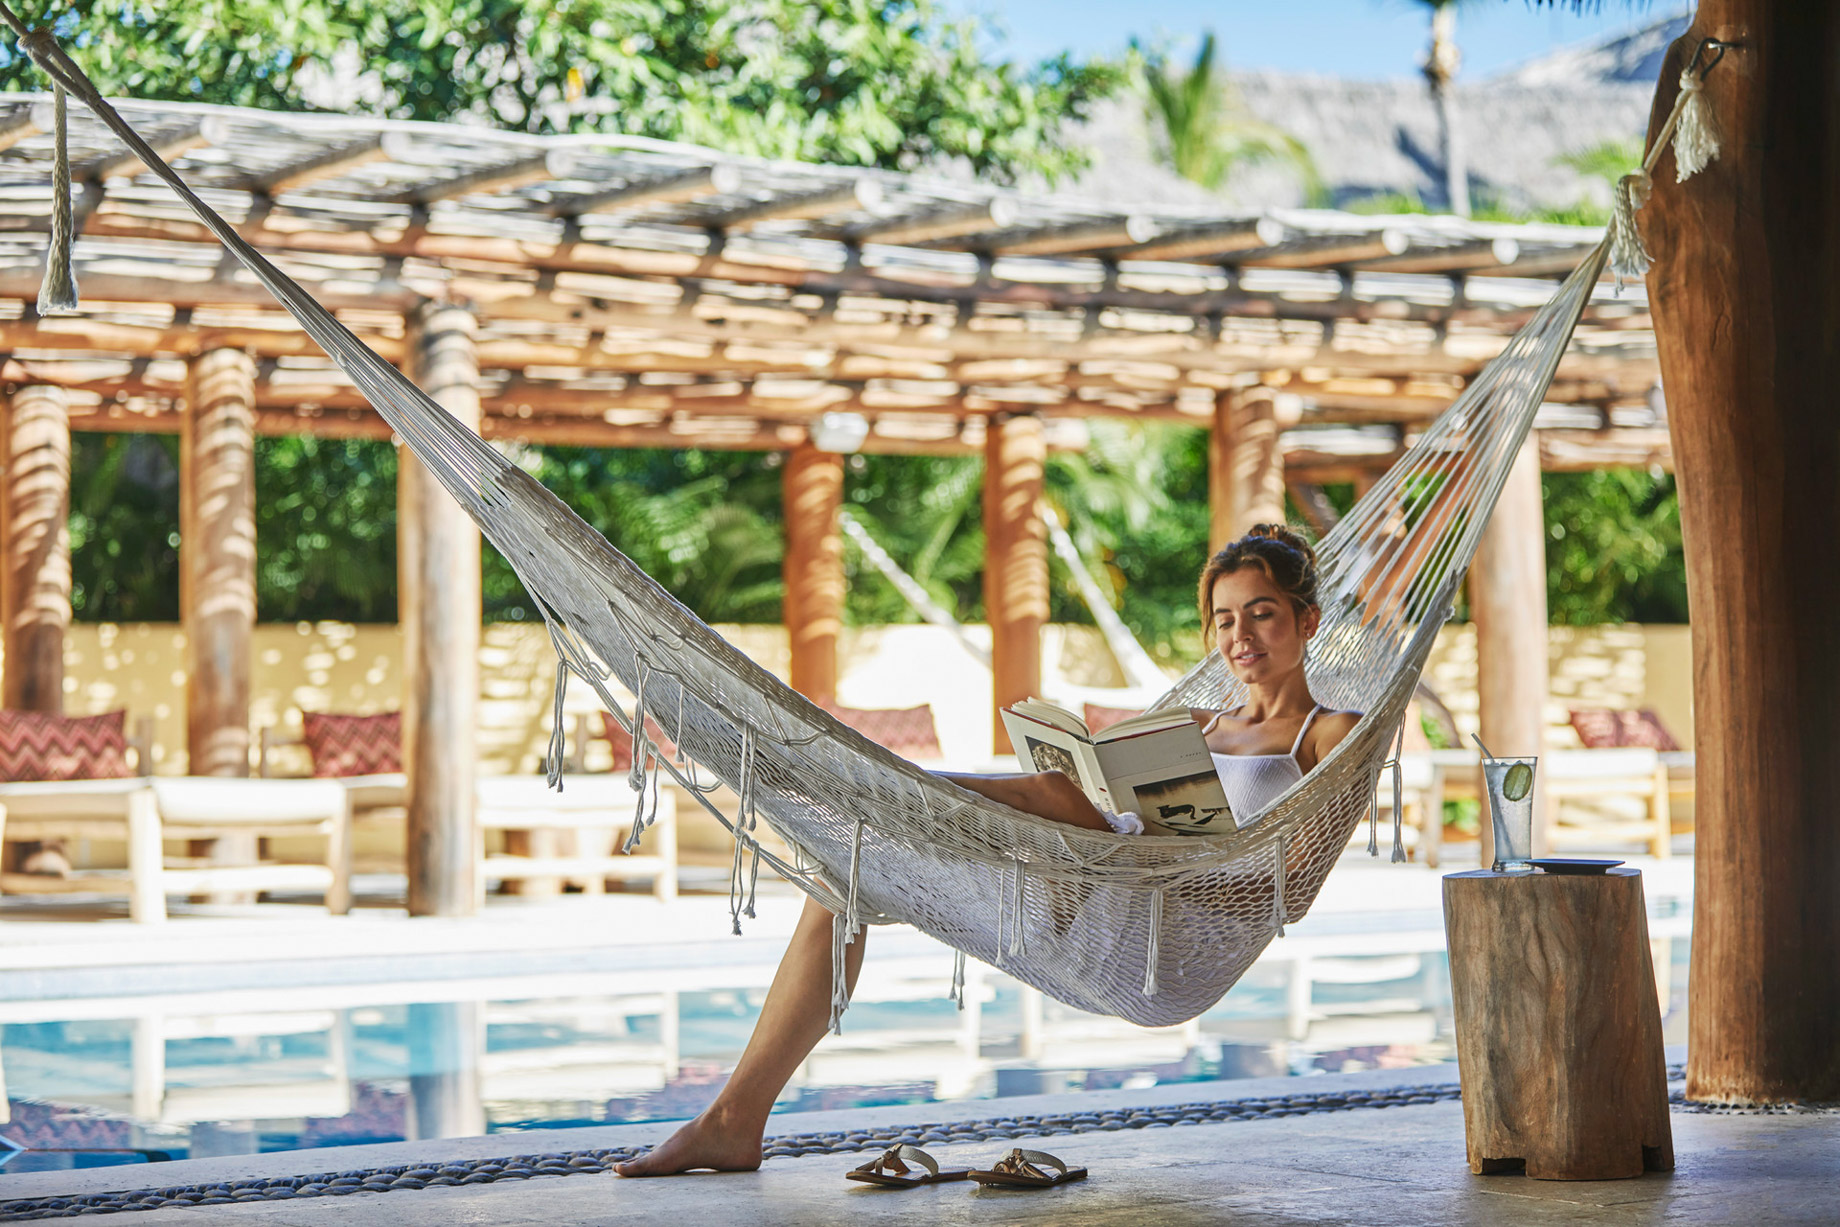 Four Seasons Resort Punta Mita – Nayarit, Mexico – Resort Pool Deck